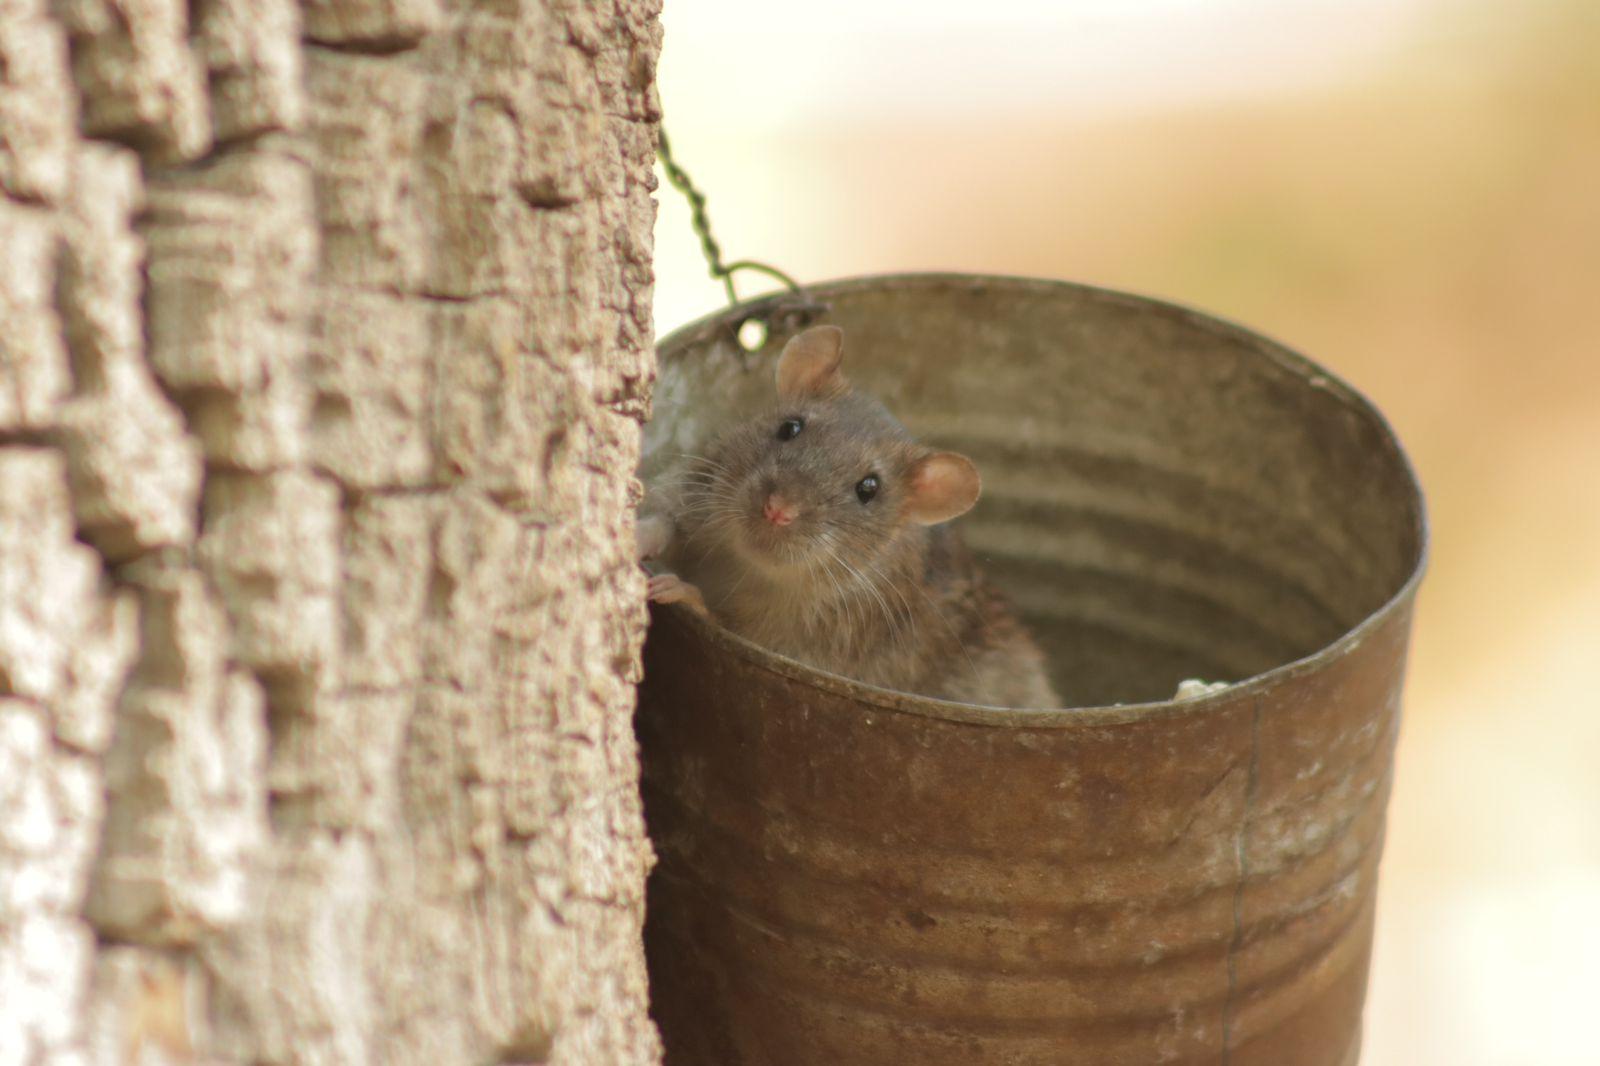 Ratas trepan árboles en busca de comida en el parque de Tlaxcala 